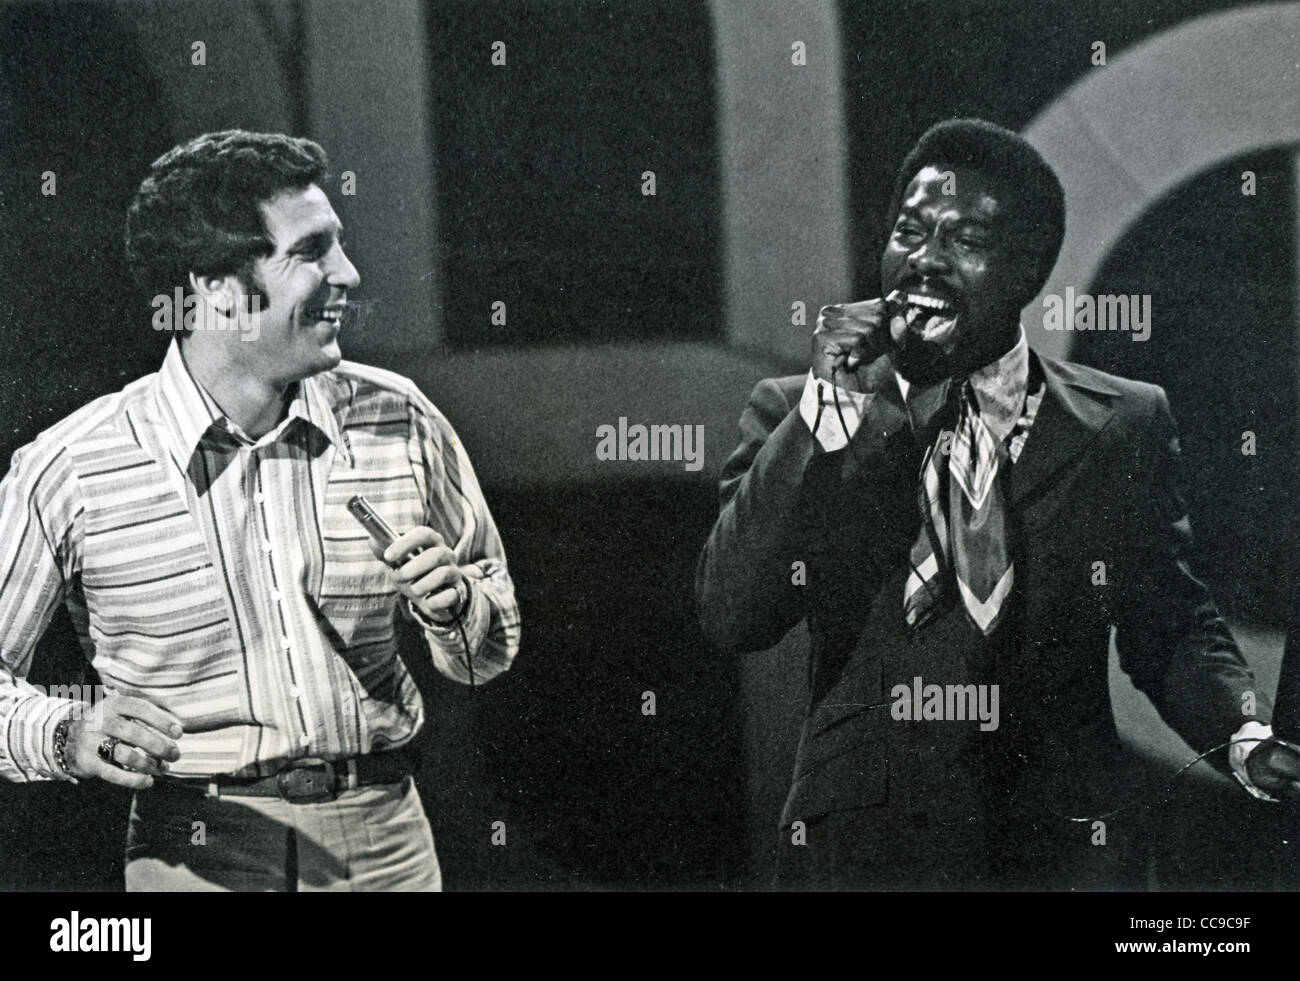 WILSON PICKETT-NOUS R&B/Soul singer à droite avec Tom Jones sur une émission de télévision britannique à propos de 1975 Banque D'Images